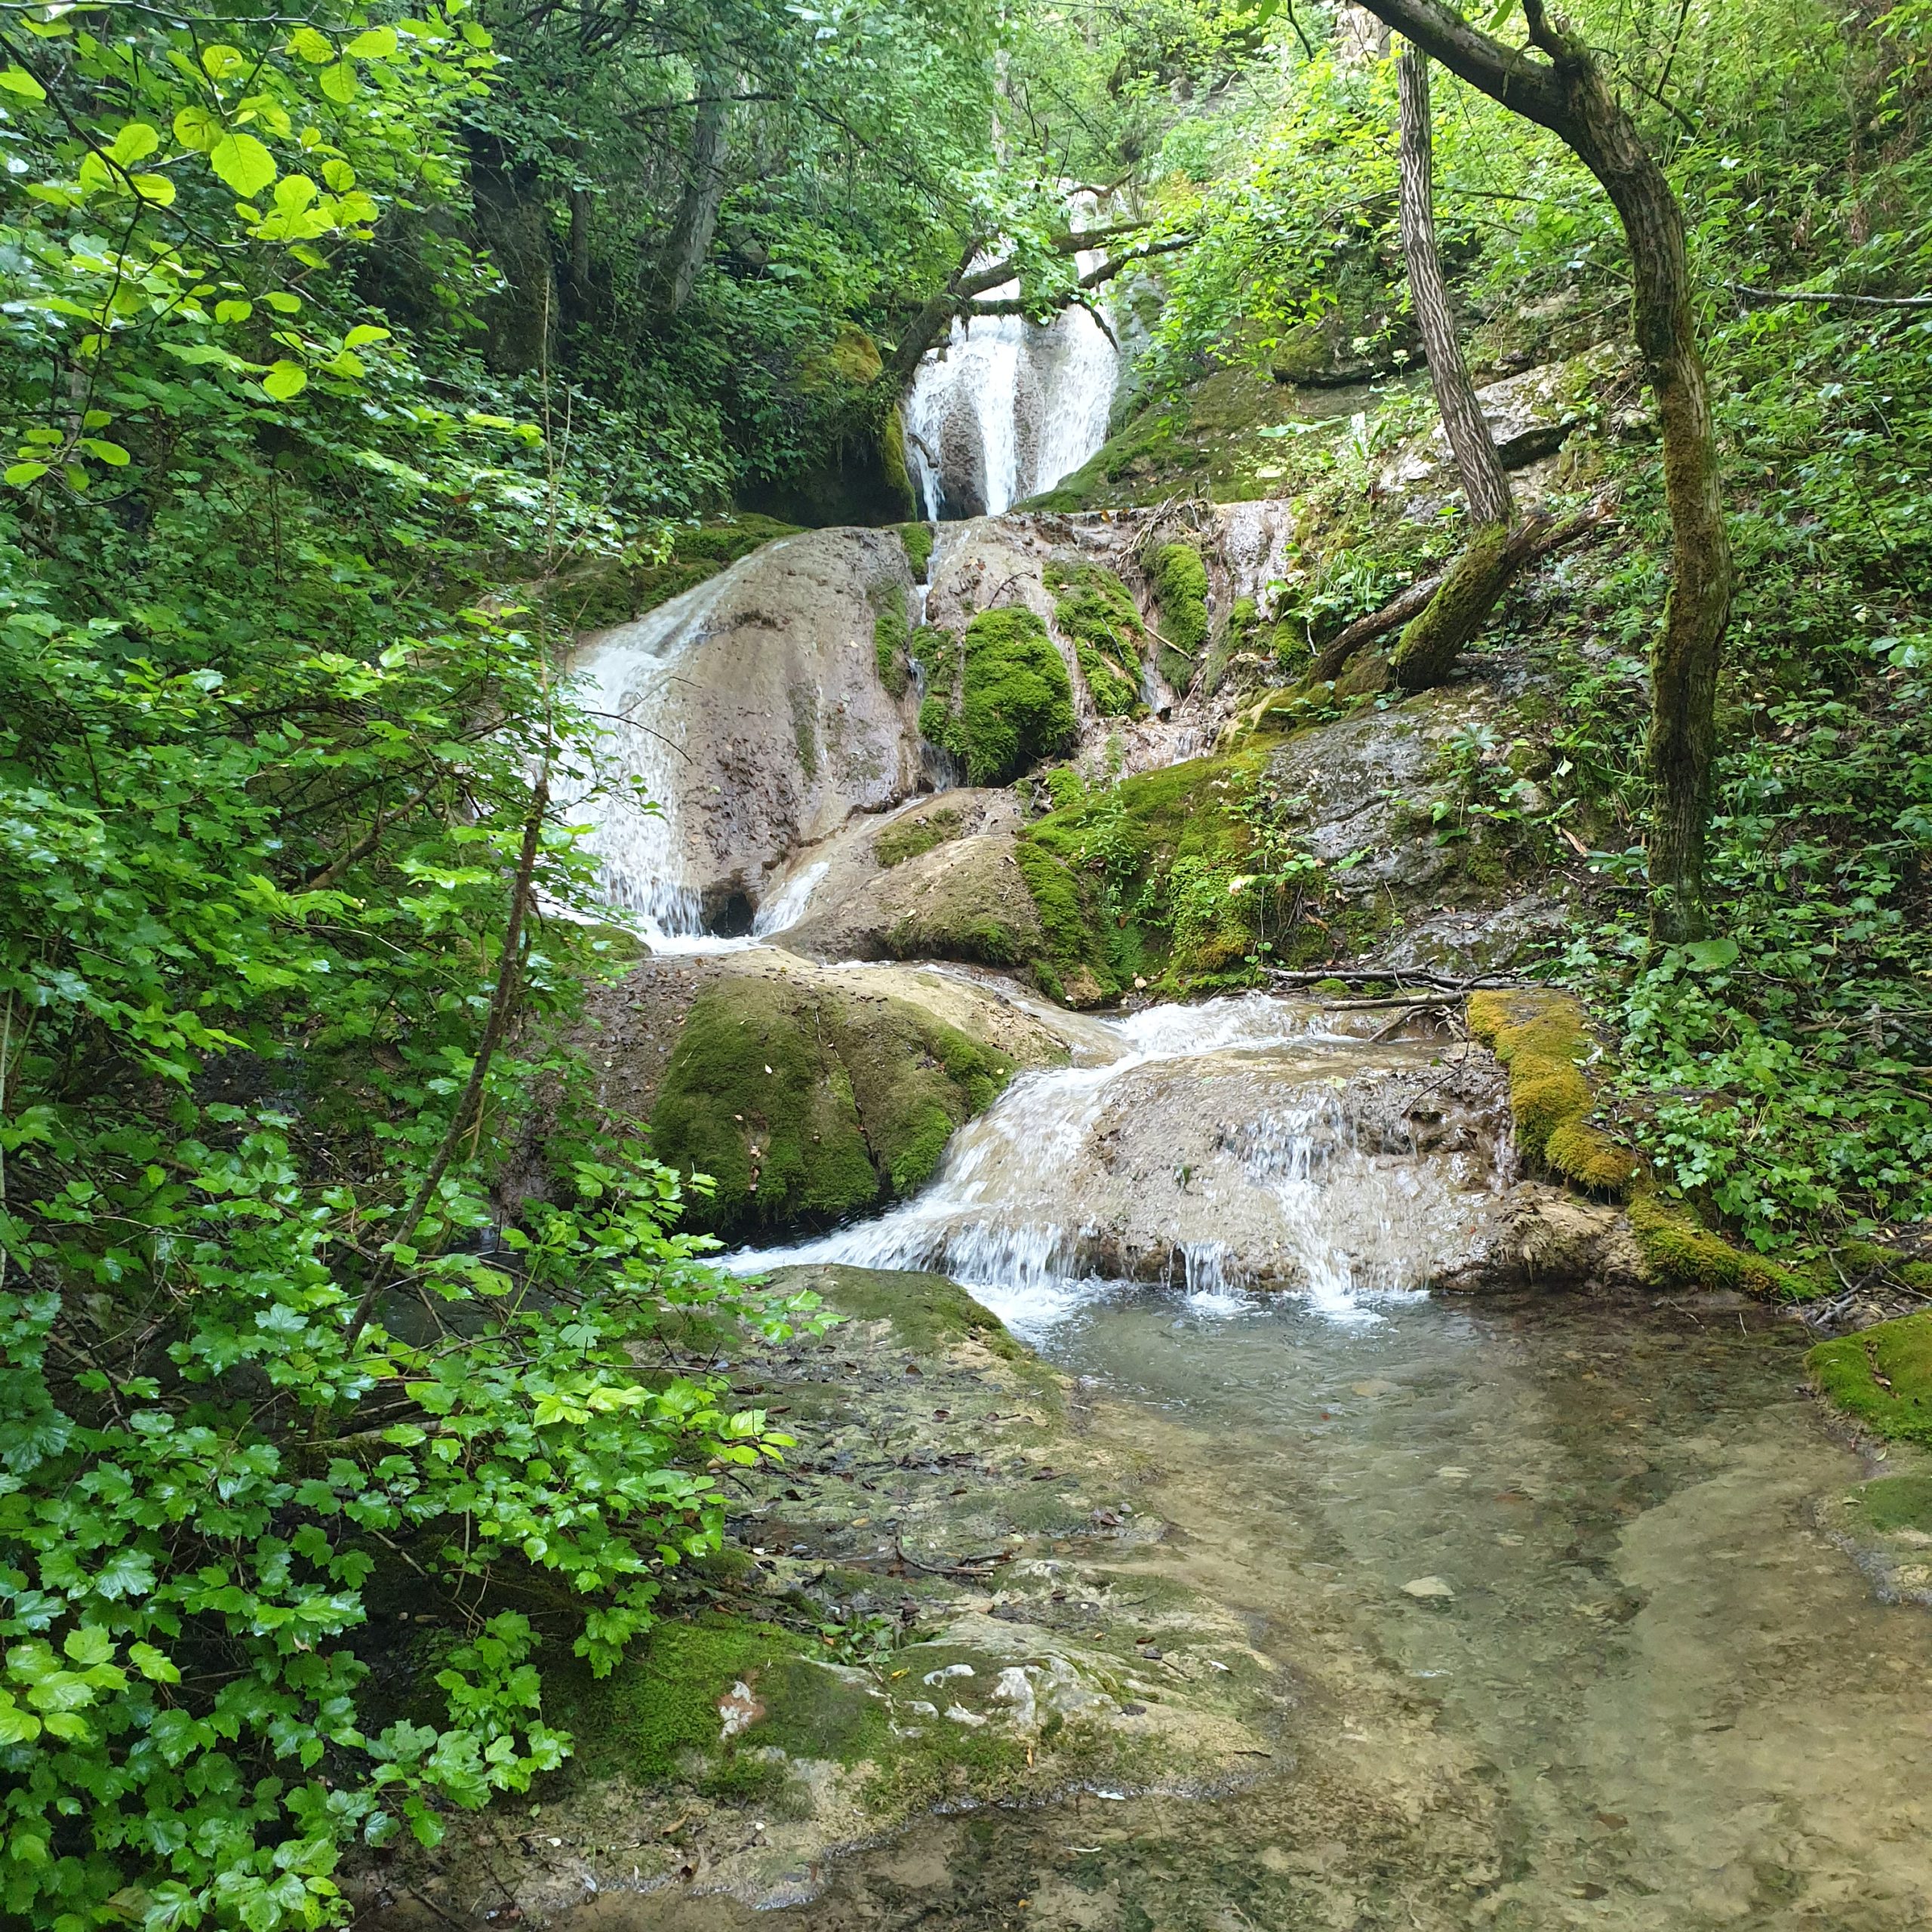 Znakva Waterfall